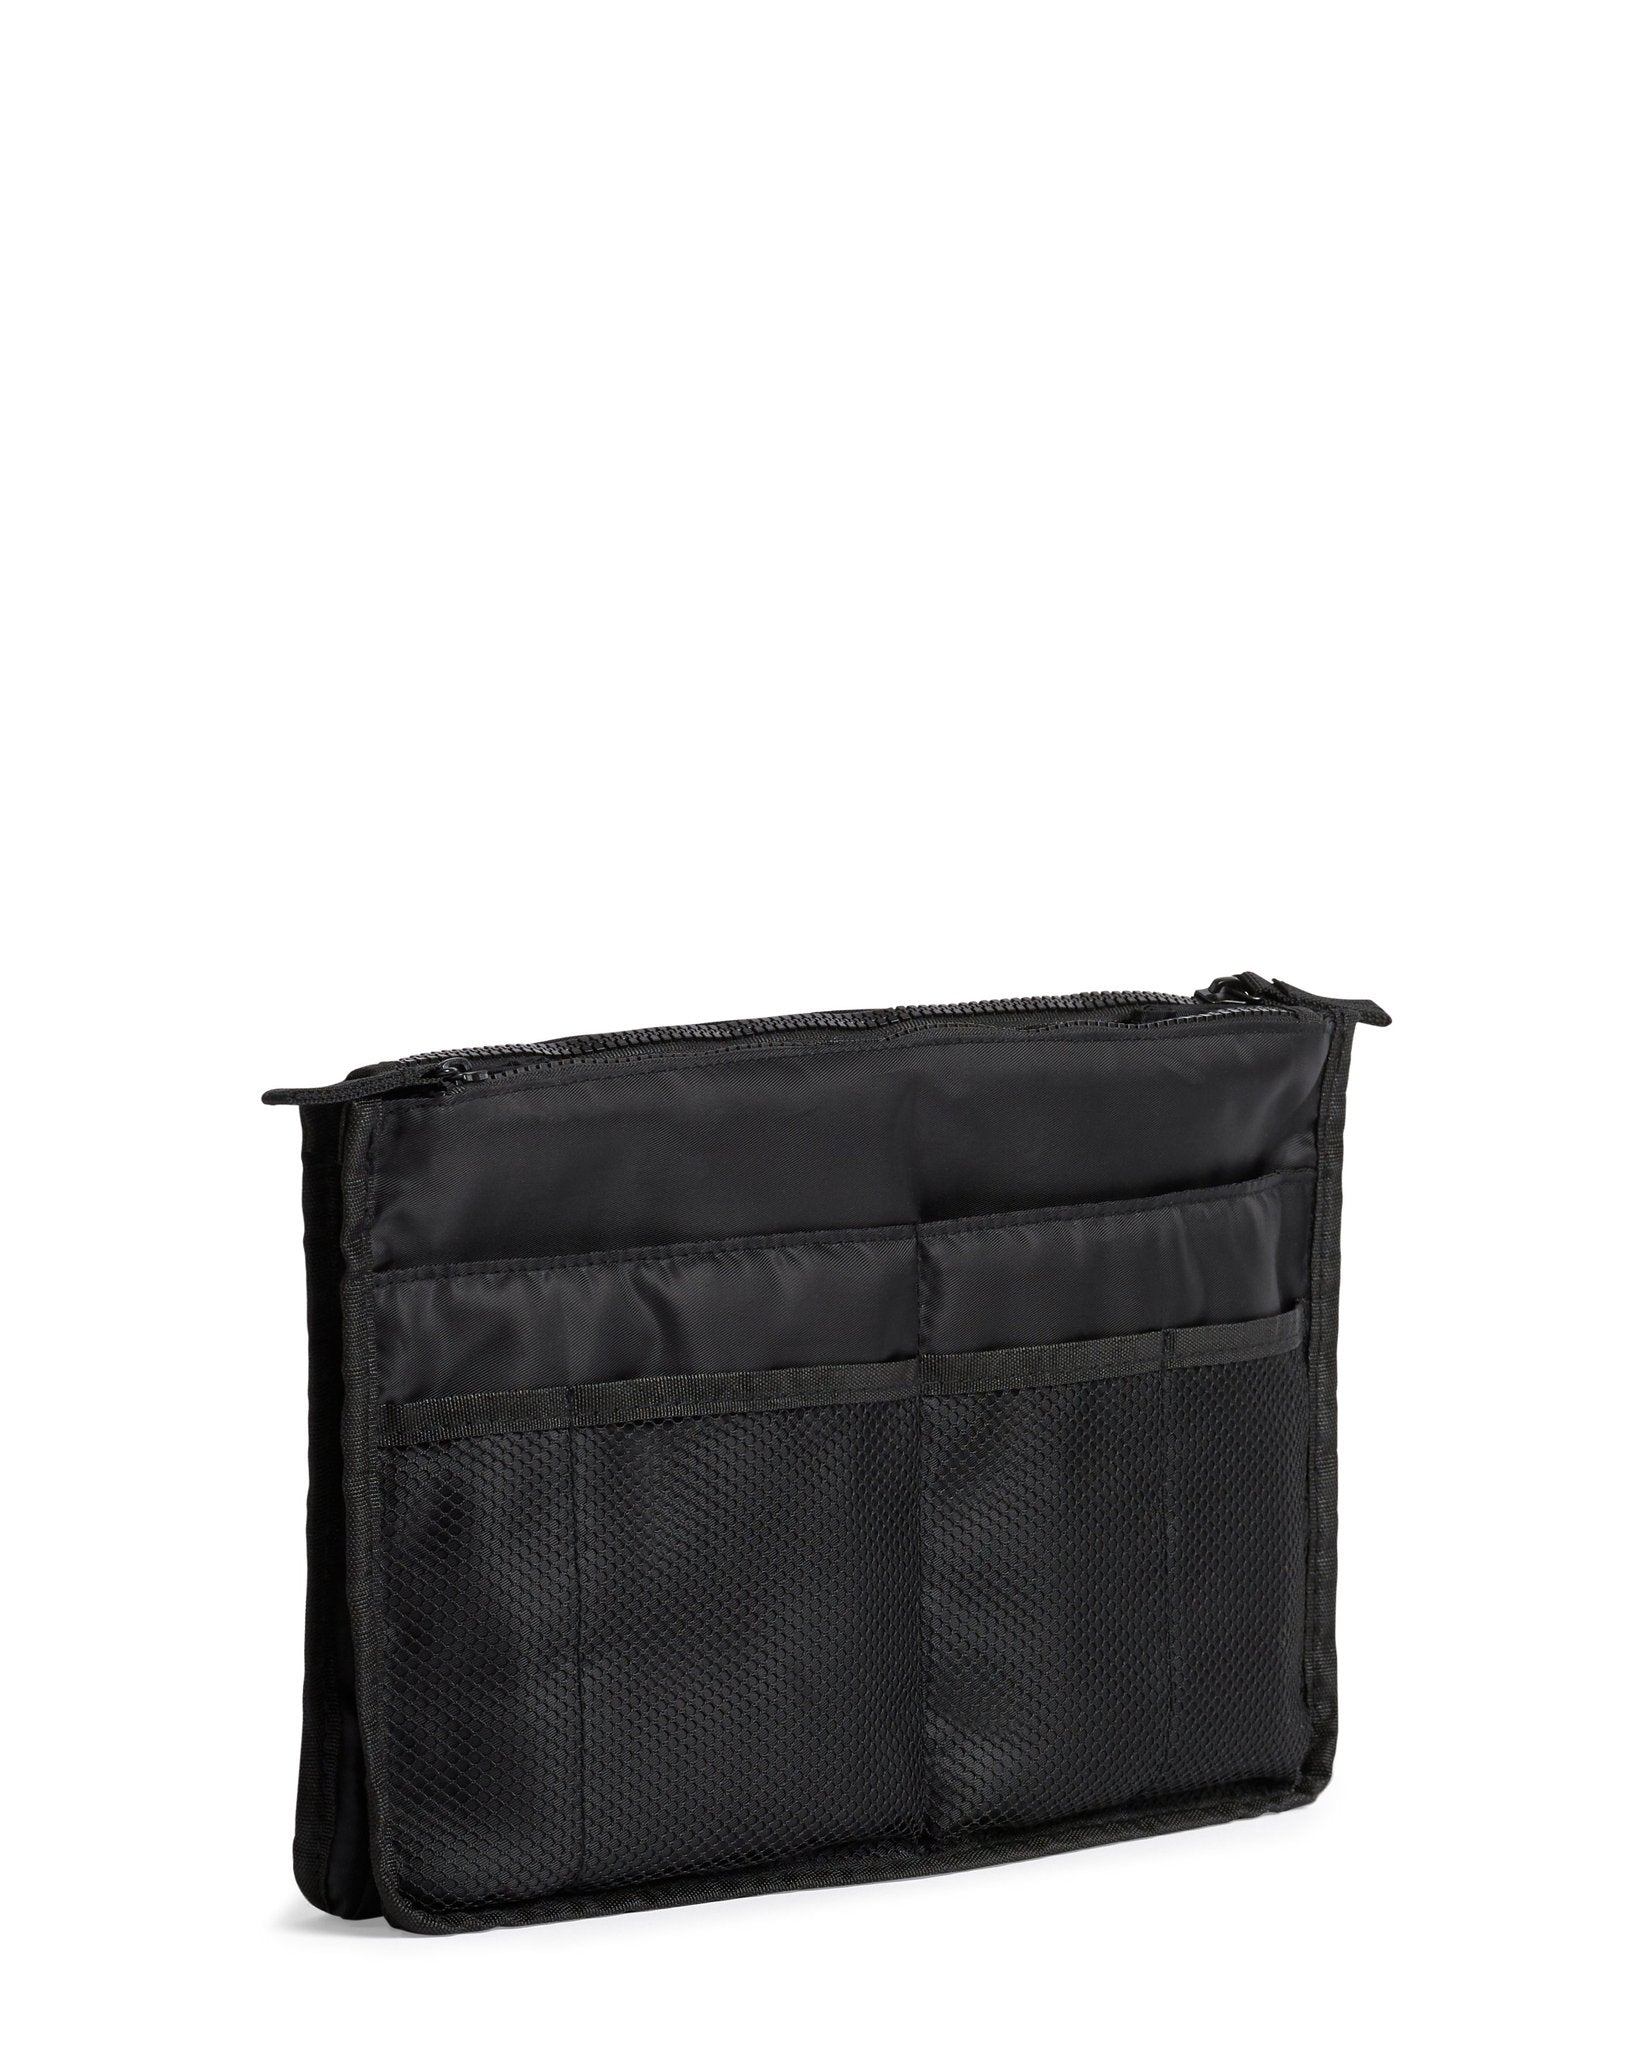 Bag Organizer / Organiser Insert (BLACK)